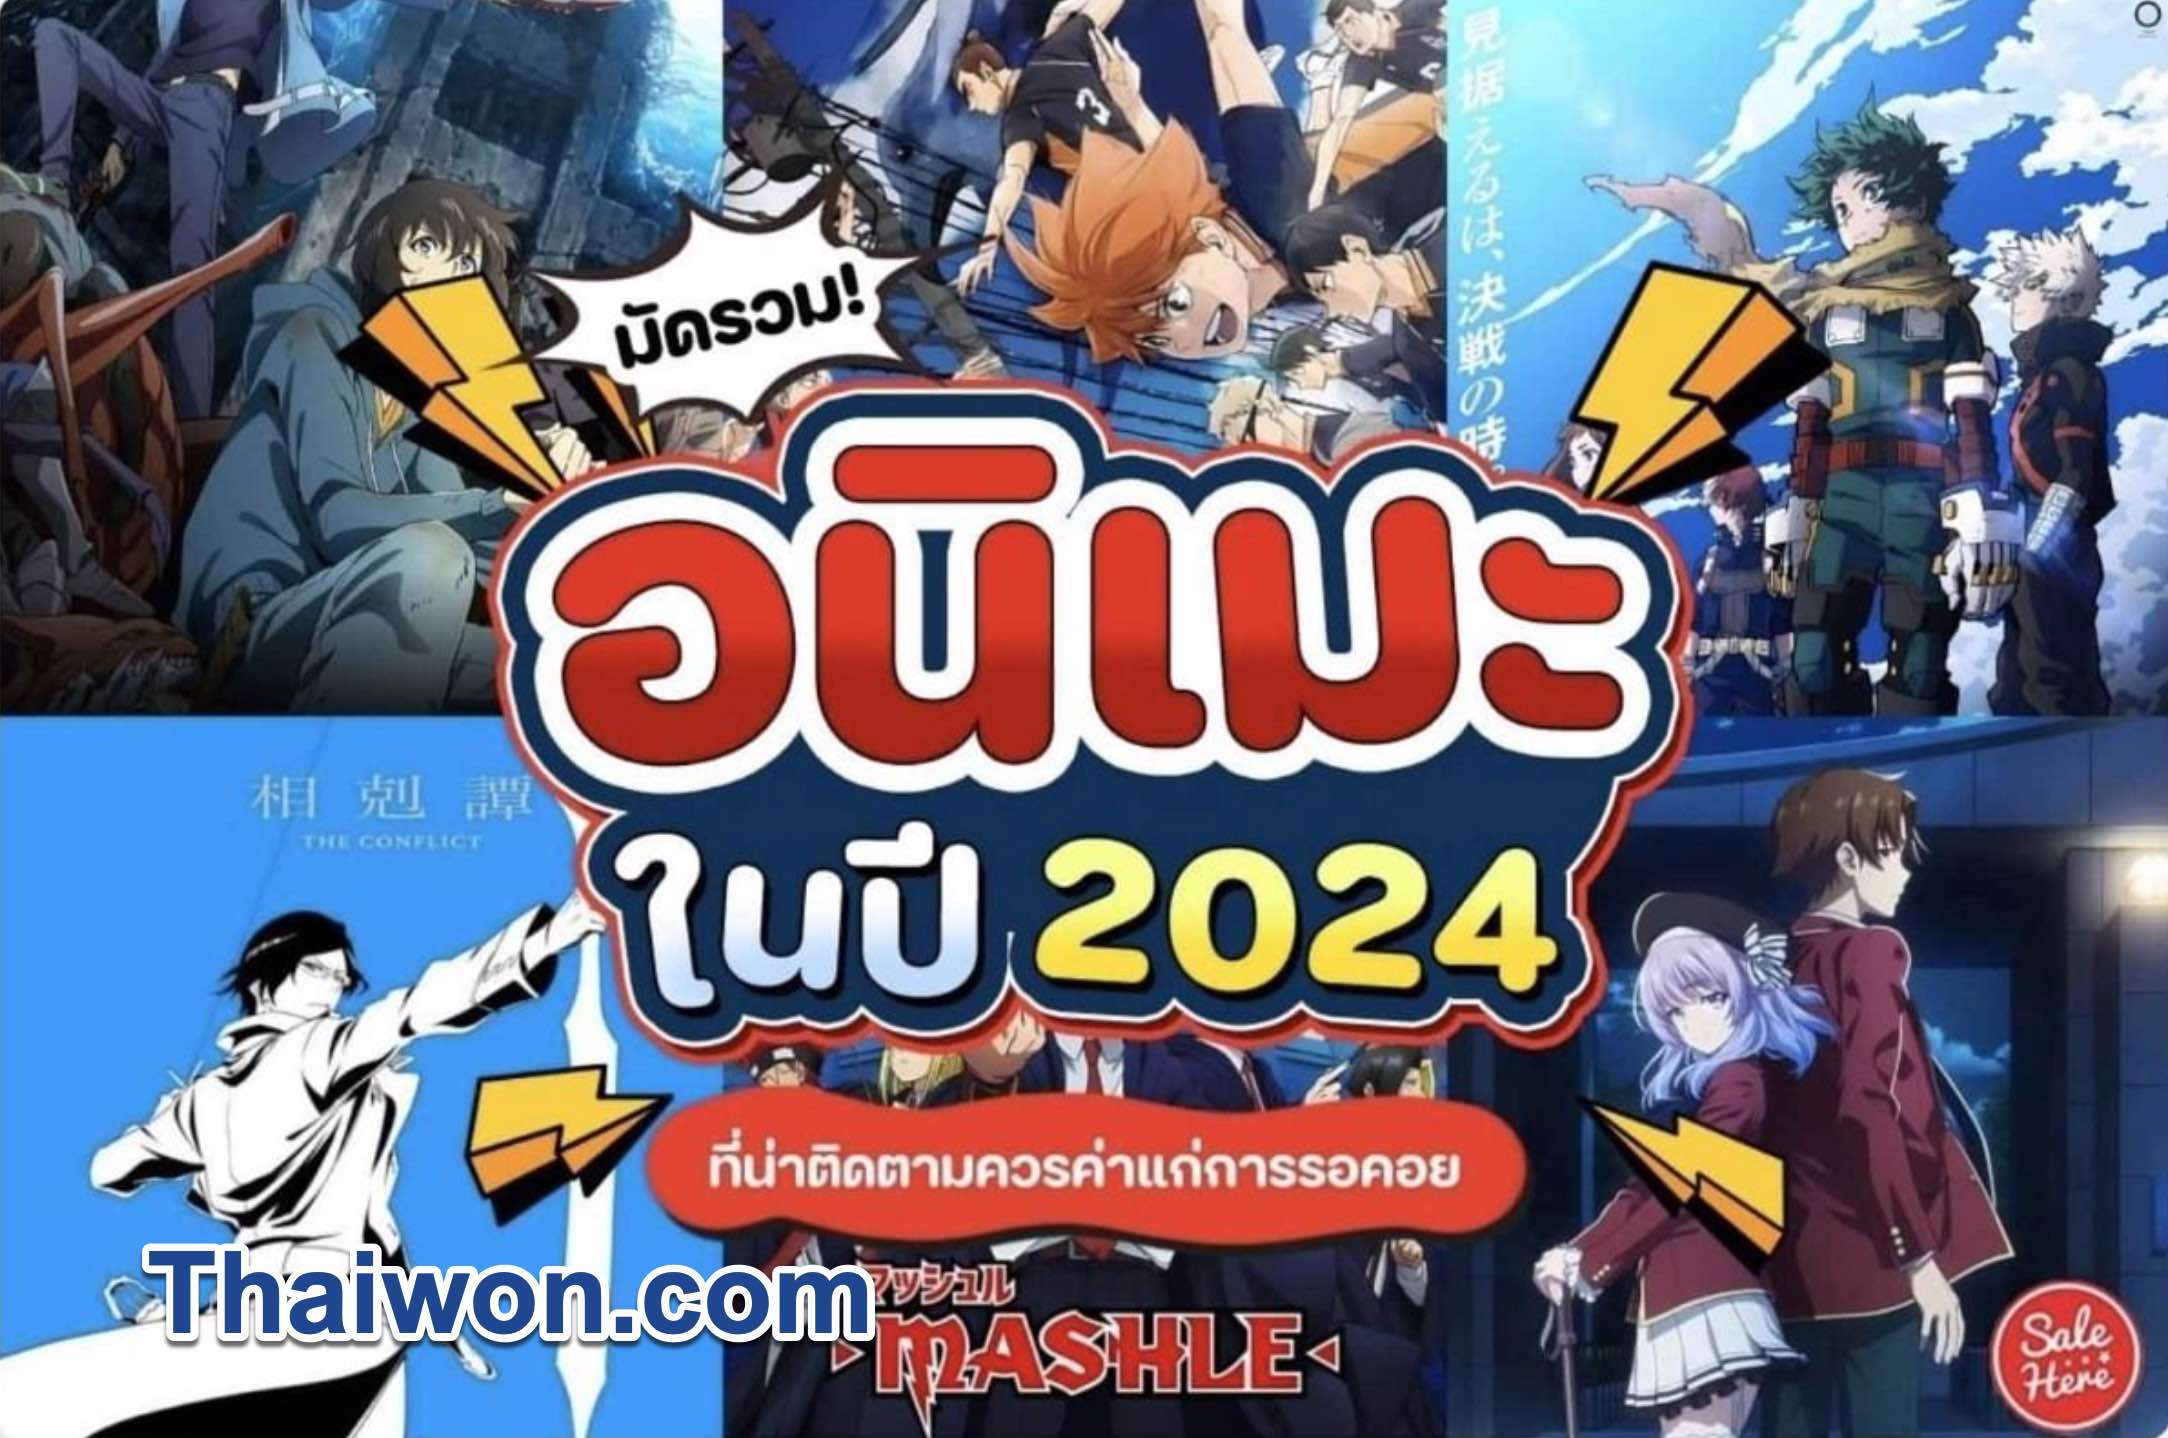 อันดับ อนิเมะพากย์ไทย ปี 2024 พร้อมด้วยรายชื่อหนังใหม่น่าดูในเดือนนี้, อนิเมะพากย์ไทย, อนิเมะพากย์ไทยเต็มเรื่อง, อนิเมะพากย์ไทยใหม่ๆ, อ นิ เมะ พากย์ไทย ต่างโลก, ดูอนิเมะพากย์ไทยทั้งหมด, อนิเมะพากย์ไทย netflix, อนิเมะพากย์ไทยสนุกๆ, อนิเมะจีนพากย์ไทย, อนิเมะพากย์ไทย bilibili